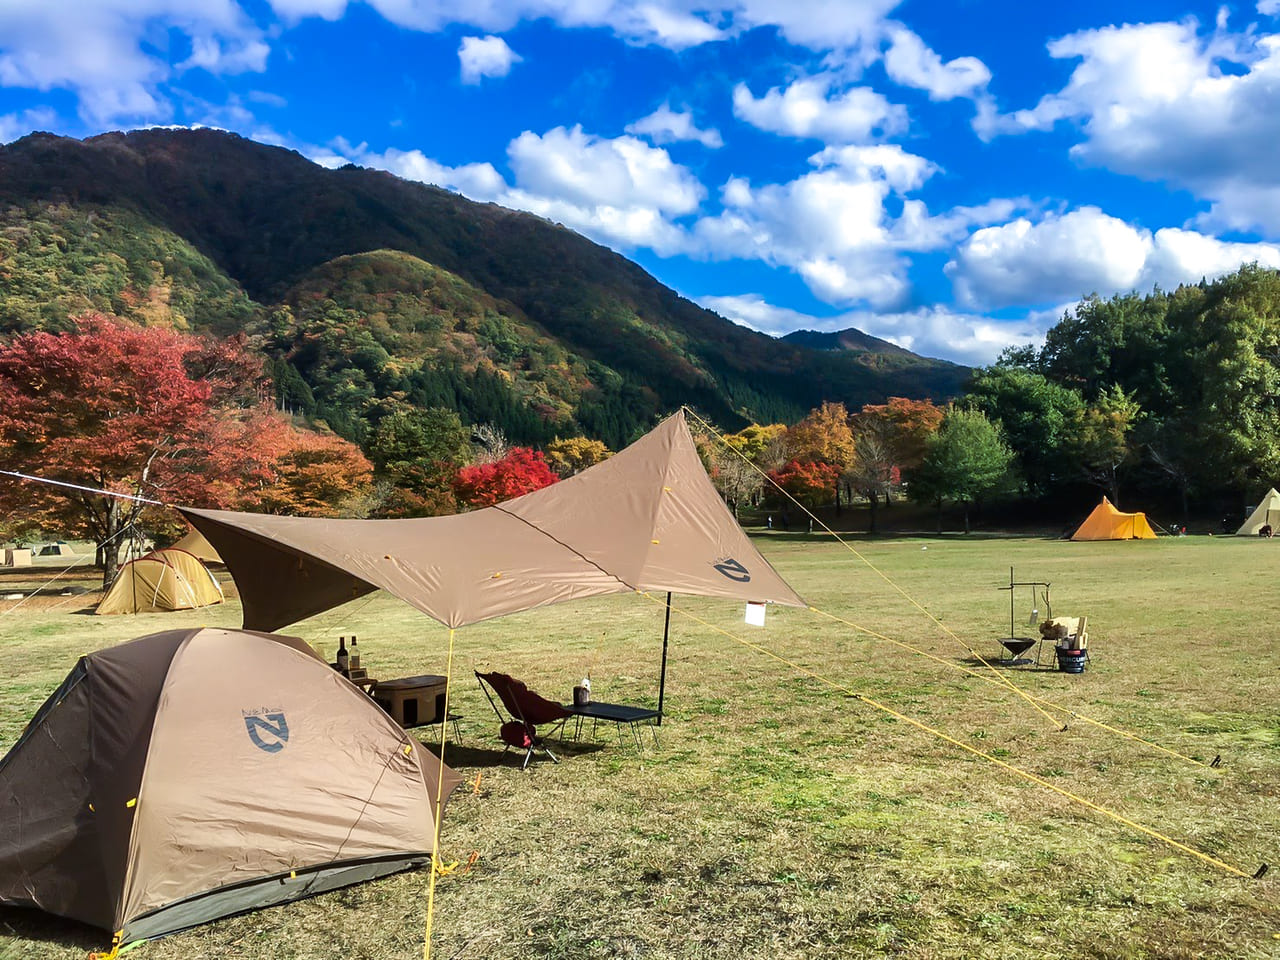 福井 麻那姫湖青少年旅行村キャンプ場で県内一の紅葉を満喫 キャンプクエスト